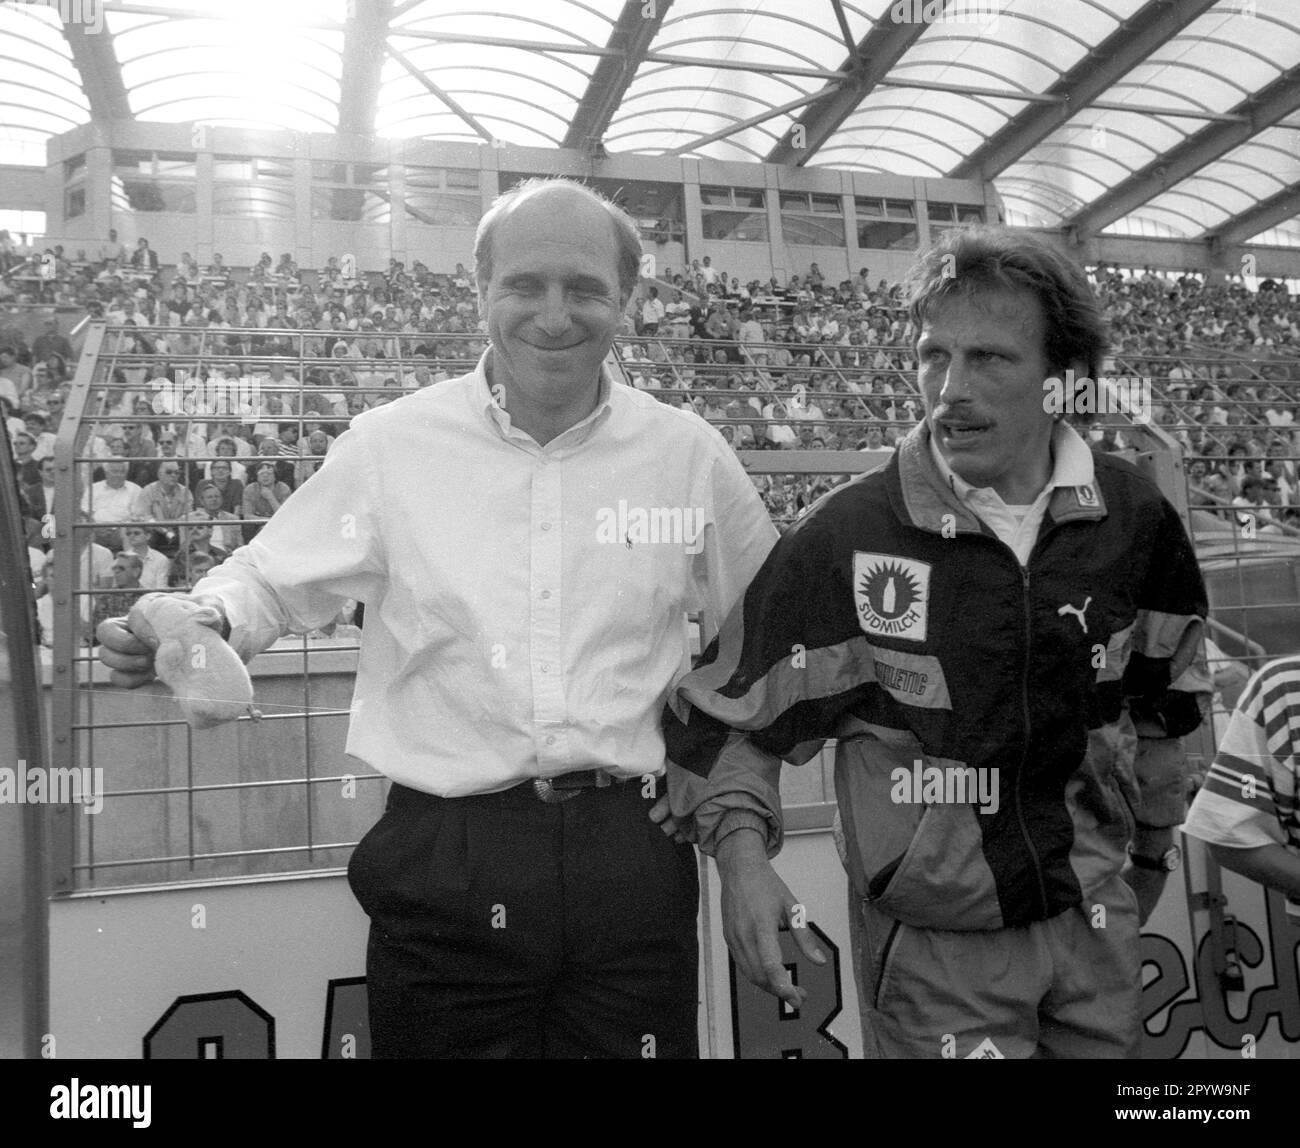 Bayer 04 Leverkusen - VFB Stuttgart 1:2 /16.05.1992/ VFB campione tedesco 1992/ Manager Dieter Hoeneß (VFB) prima della partita con un fascino fortunato (mascotte), sulla destra allenatore Christoph Daum [traduzione automatica] Foto Stock